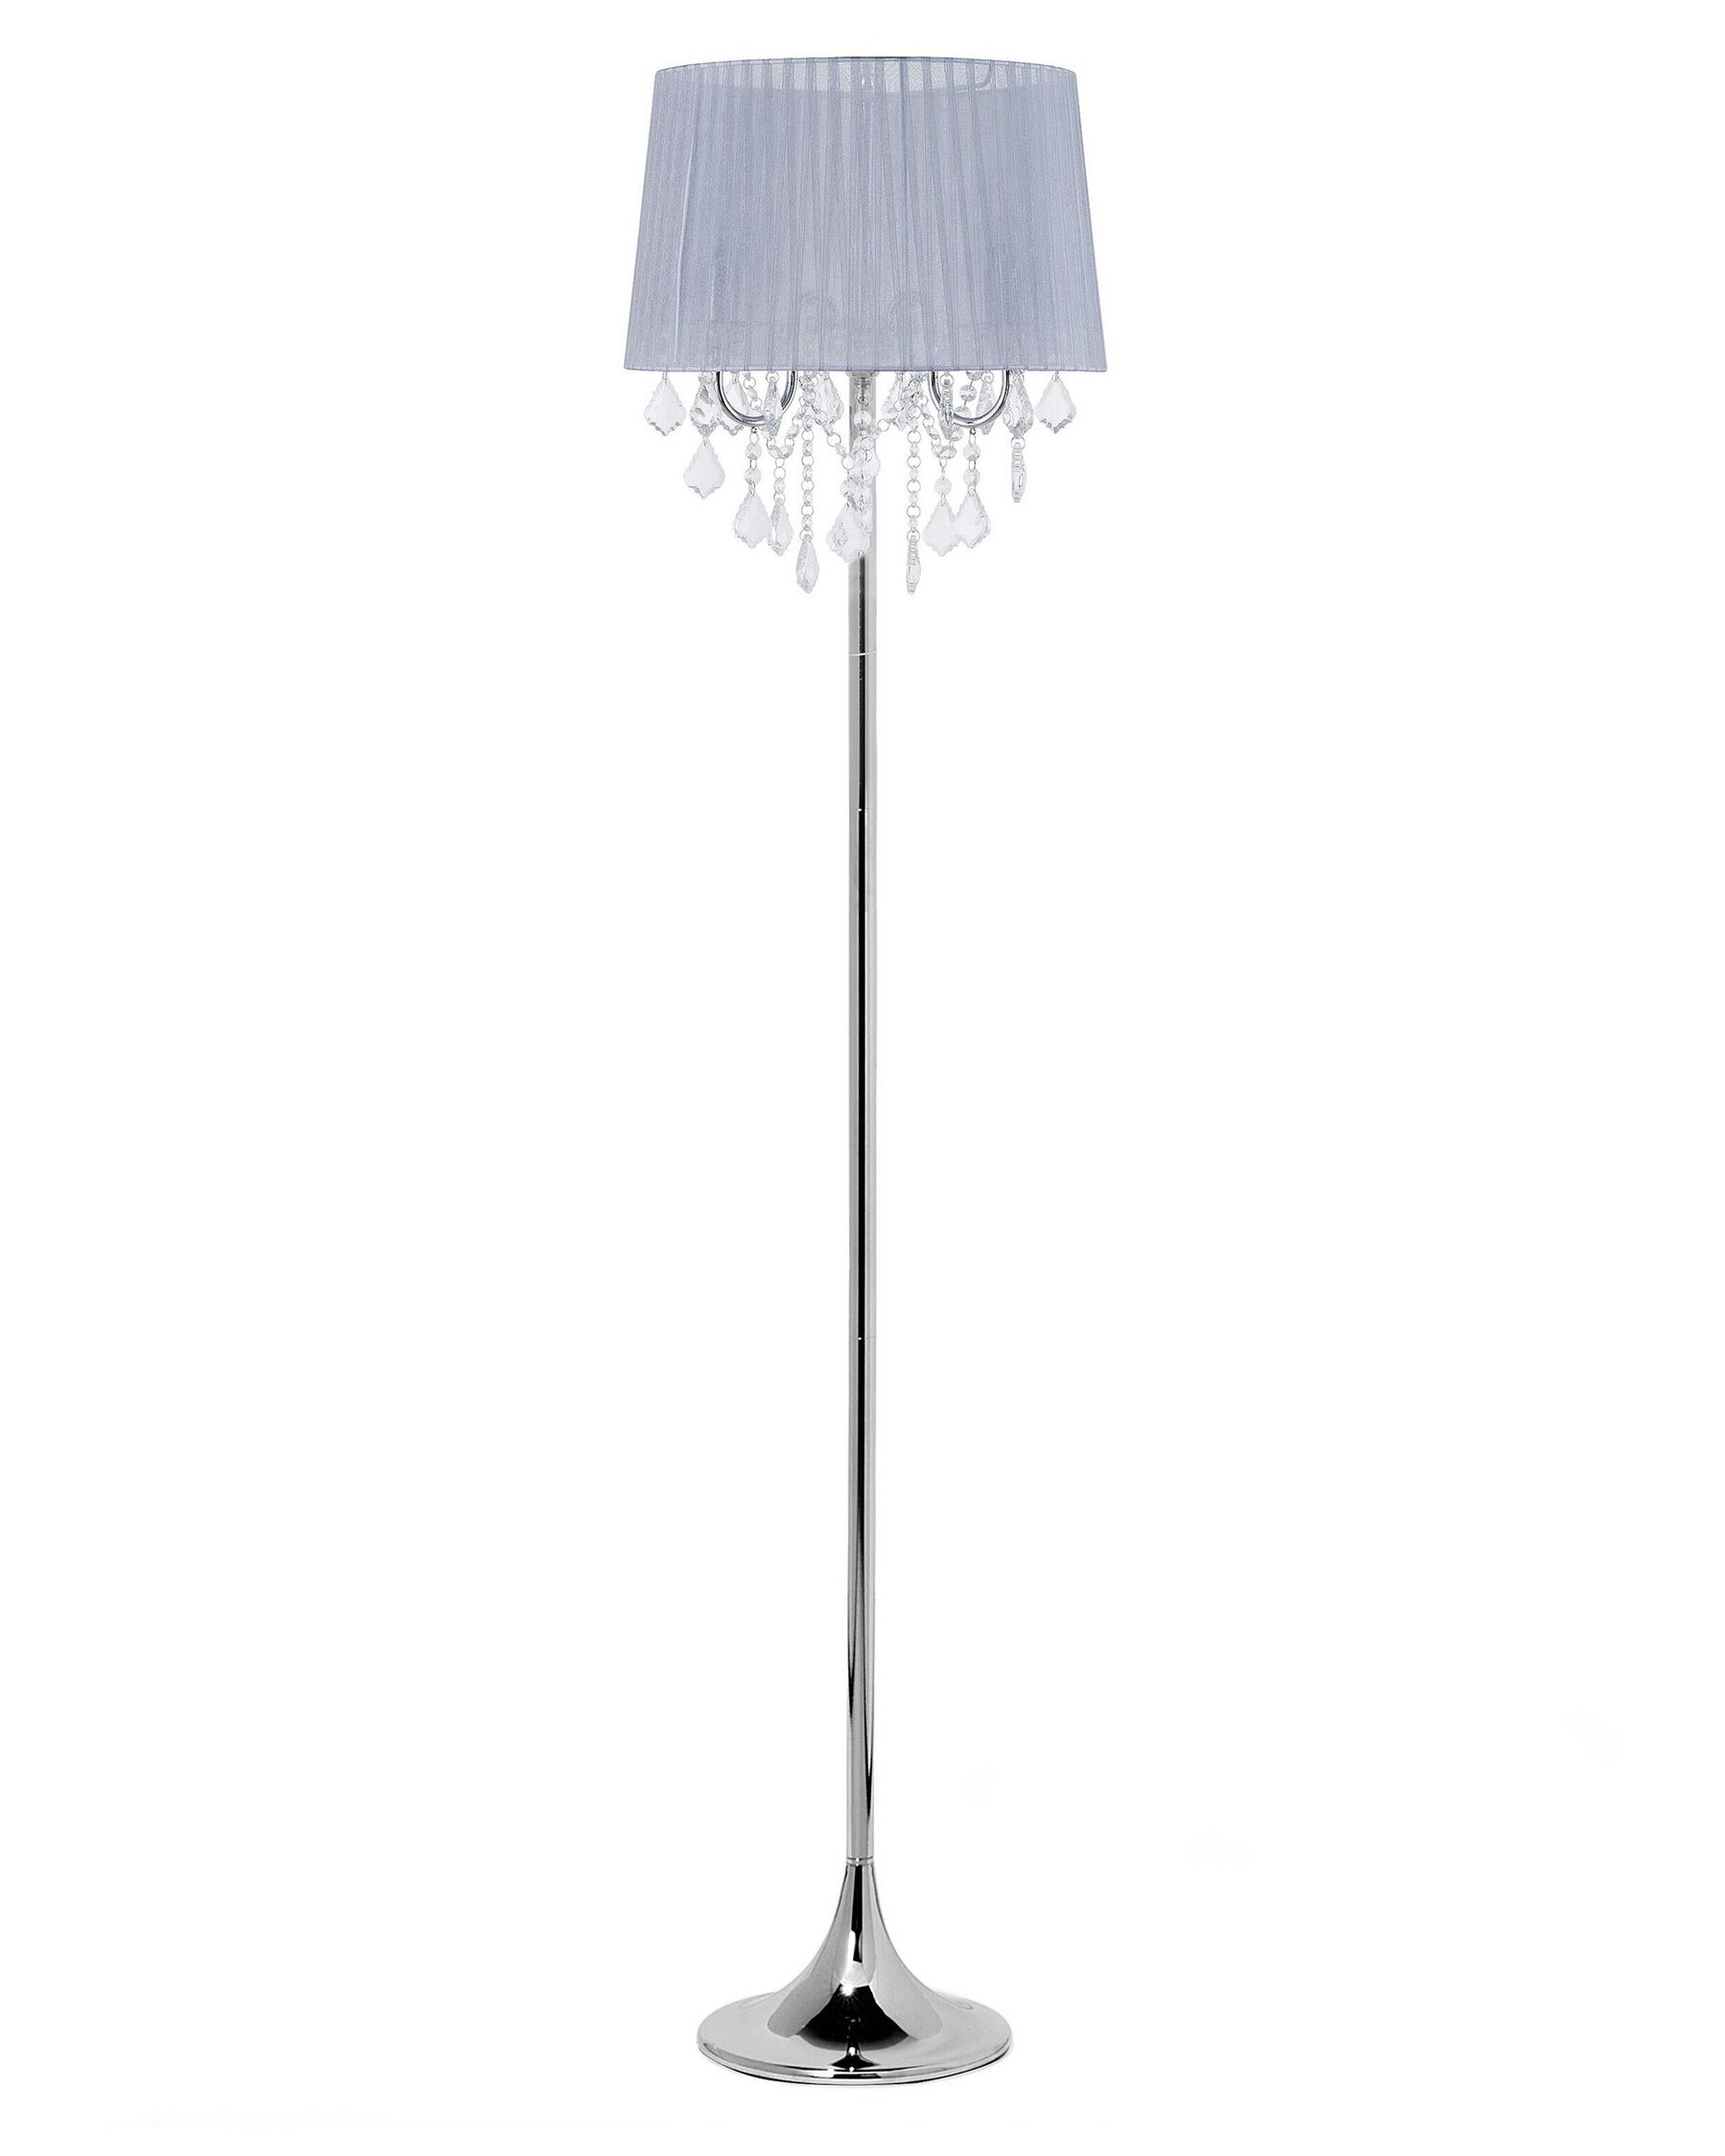 Stehlampe hellgrau Kristall-Optik 170 cm Trommelform EVANS_696041